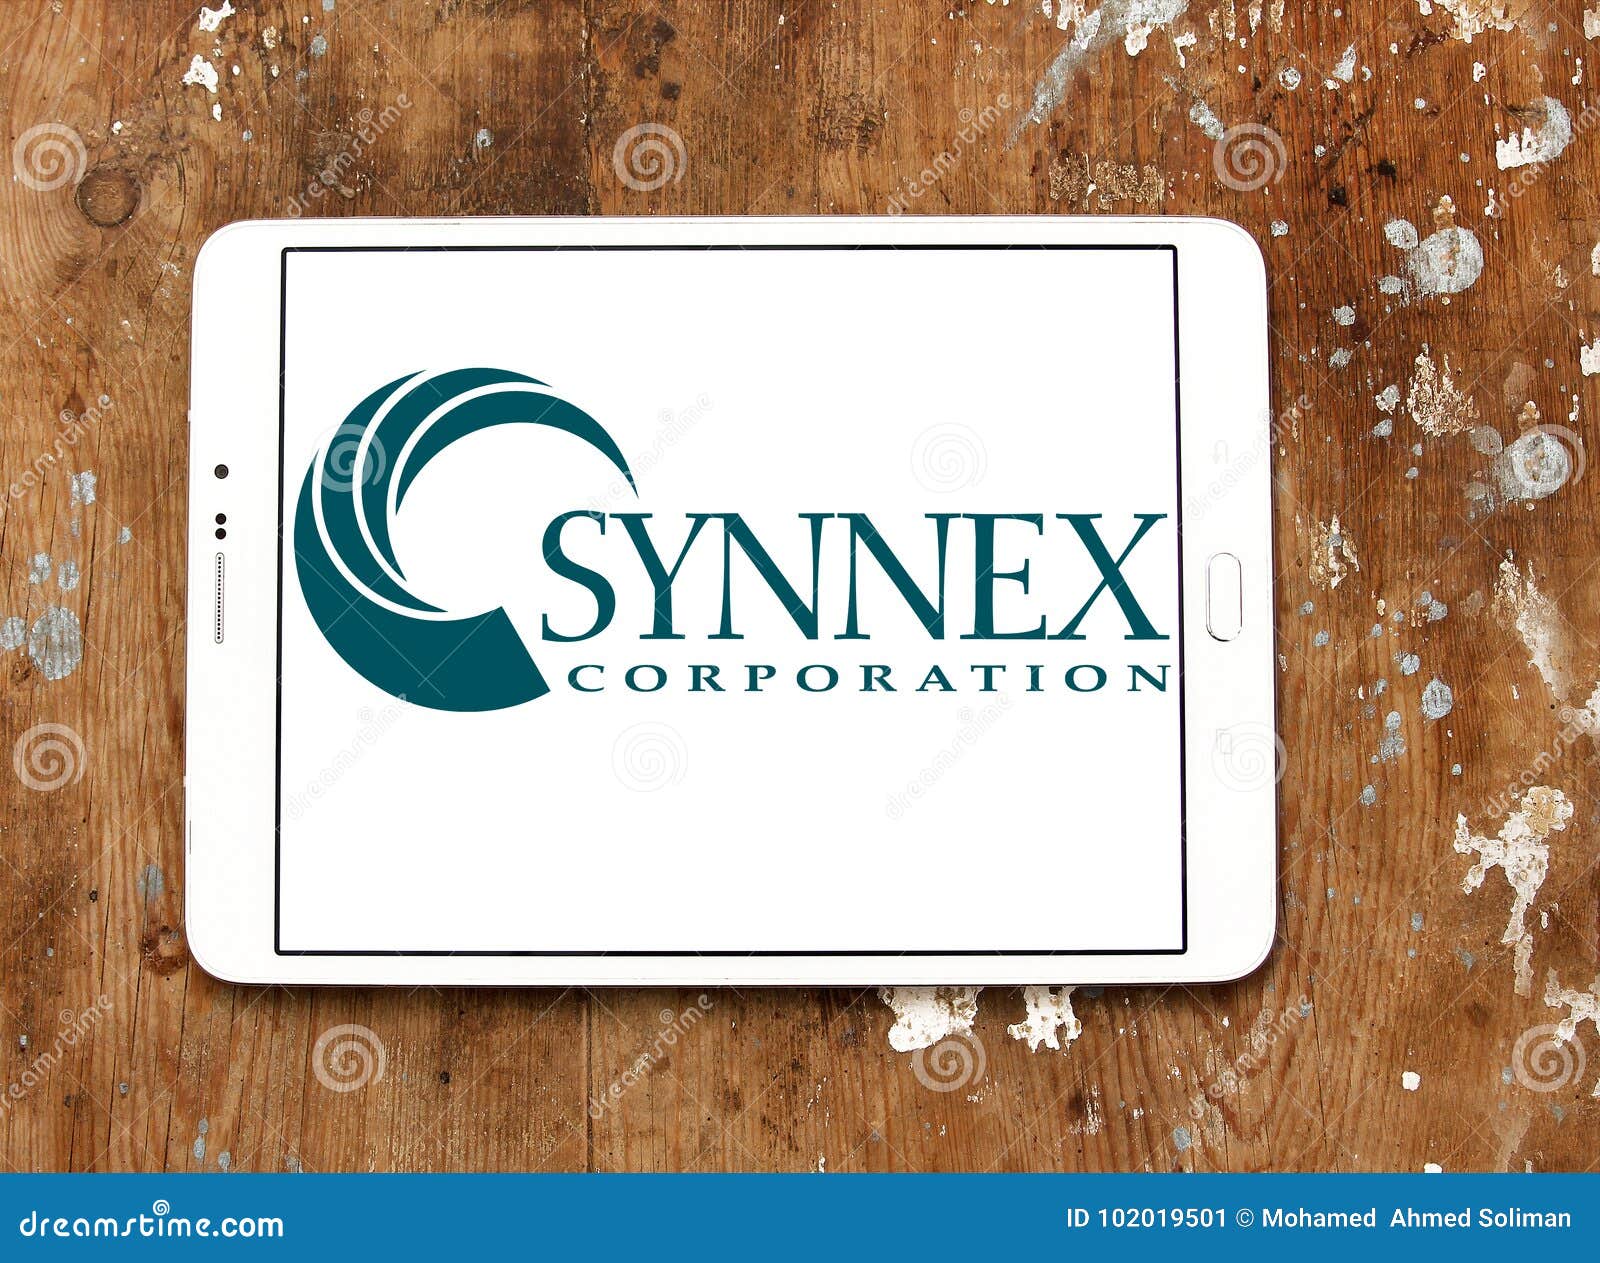 SYNNEX Corporation - một trong những công ty đa dạng hàng đầu thế giới về sản phẩm kỹ thuật số. Từ thiết bị chụp hình đến phần mềm quản lý, SYNNEX có tất cả những gì bạn cần để đáp ứng nhu cầu của mình. Hãy bấm vào hình ảnh này để khám phá thêm về SYNNEX và nhận ngay những ưu đãi đặc biệt từ SYNNEX.